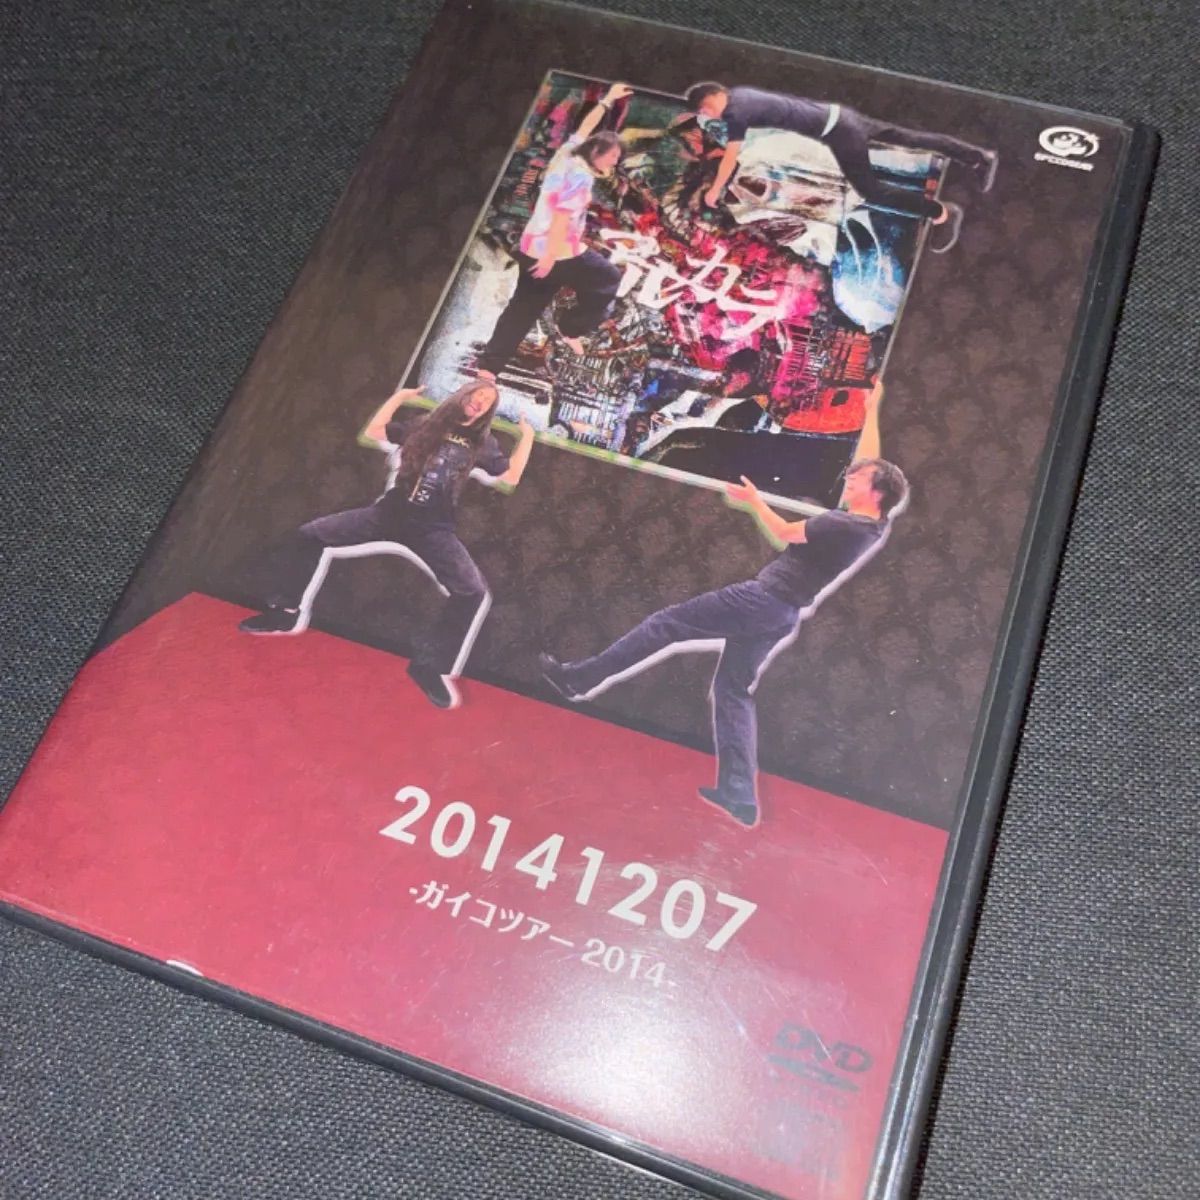 S576)アルカラ/20141207-ガイコツアー2014 DVD - メルカリ